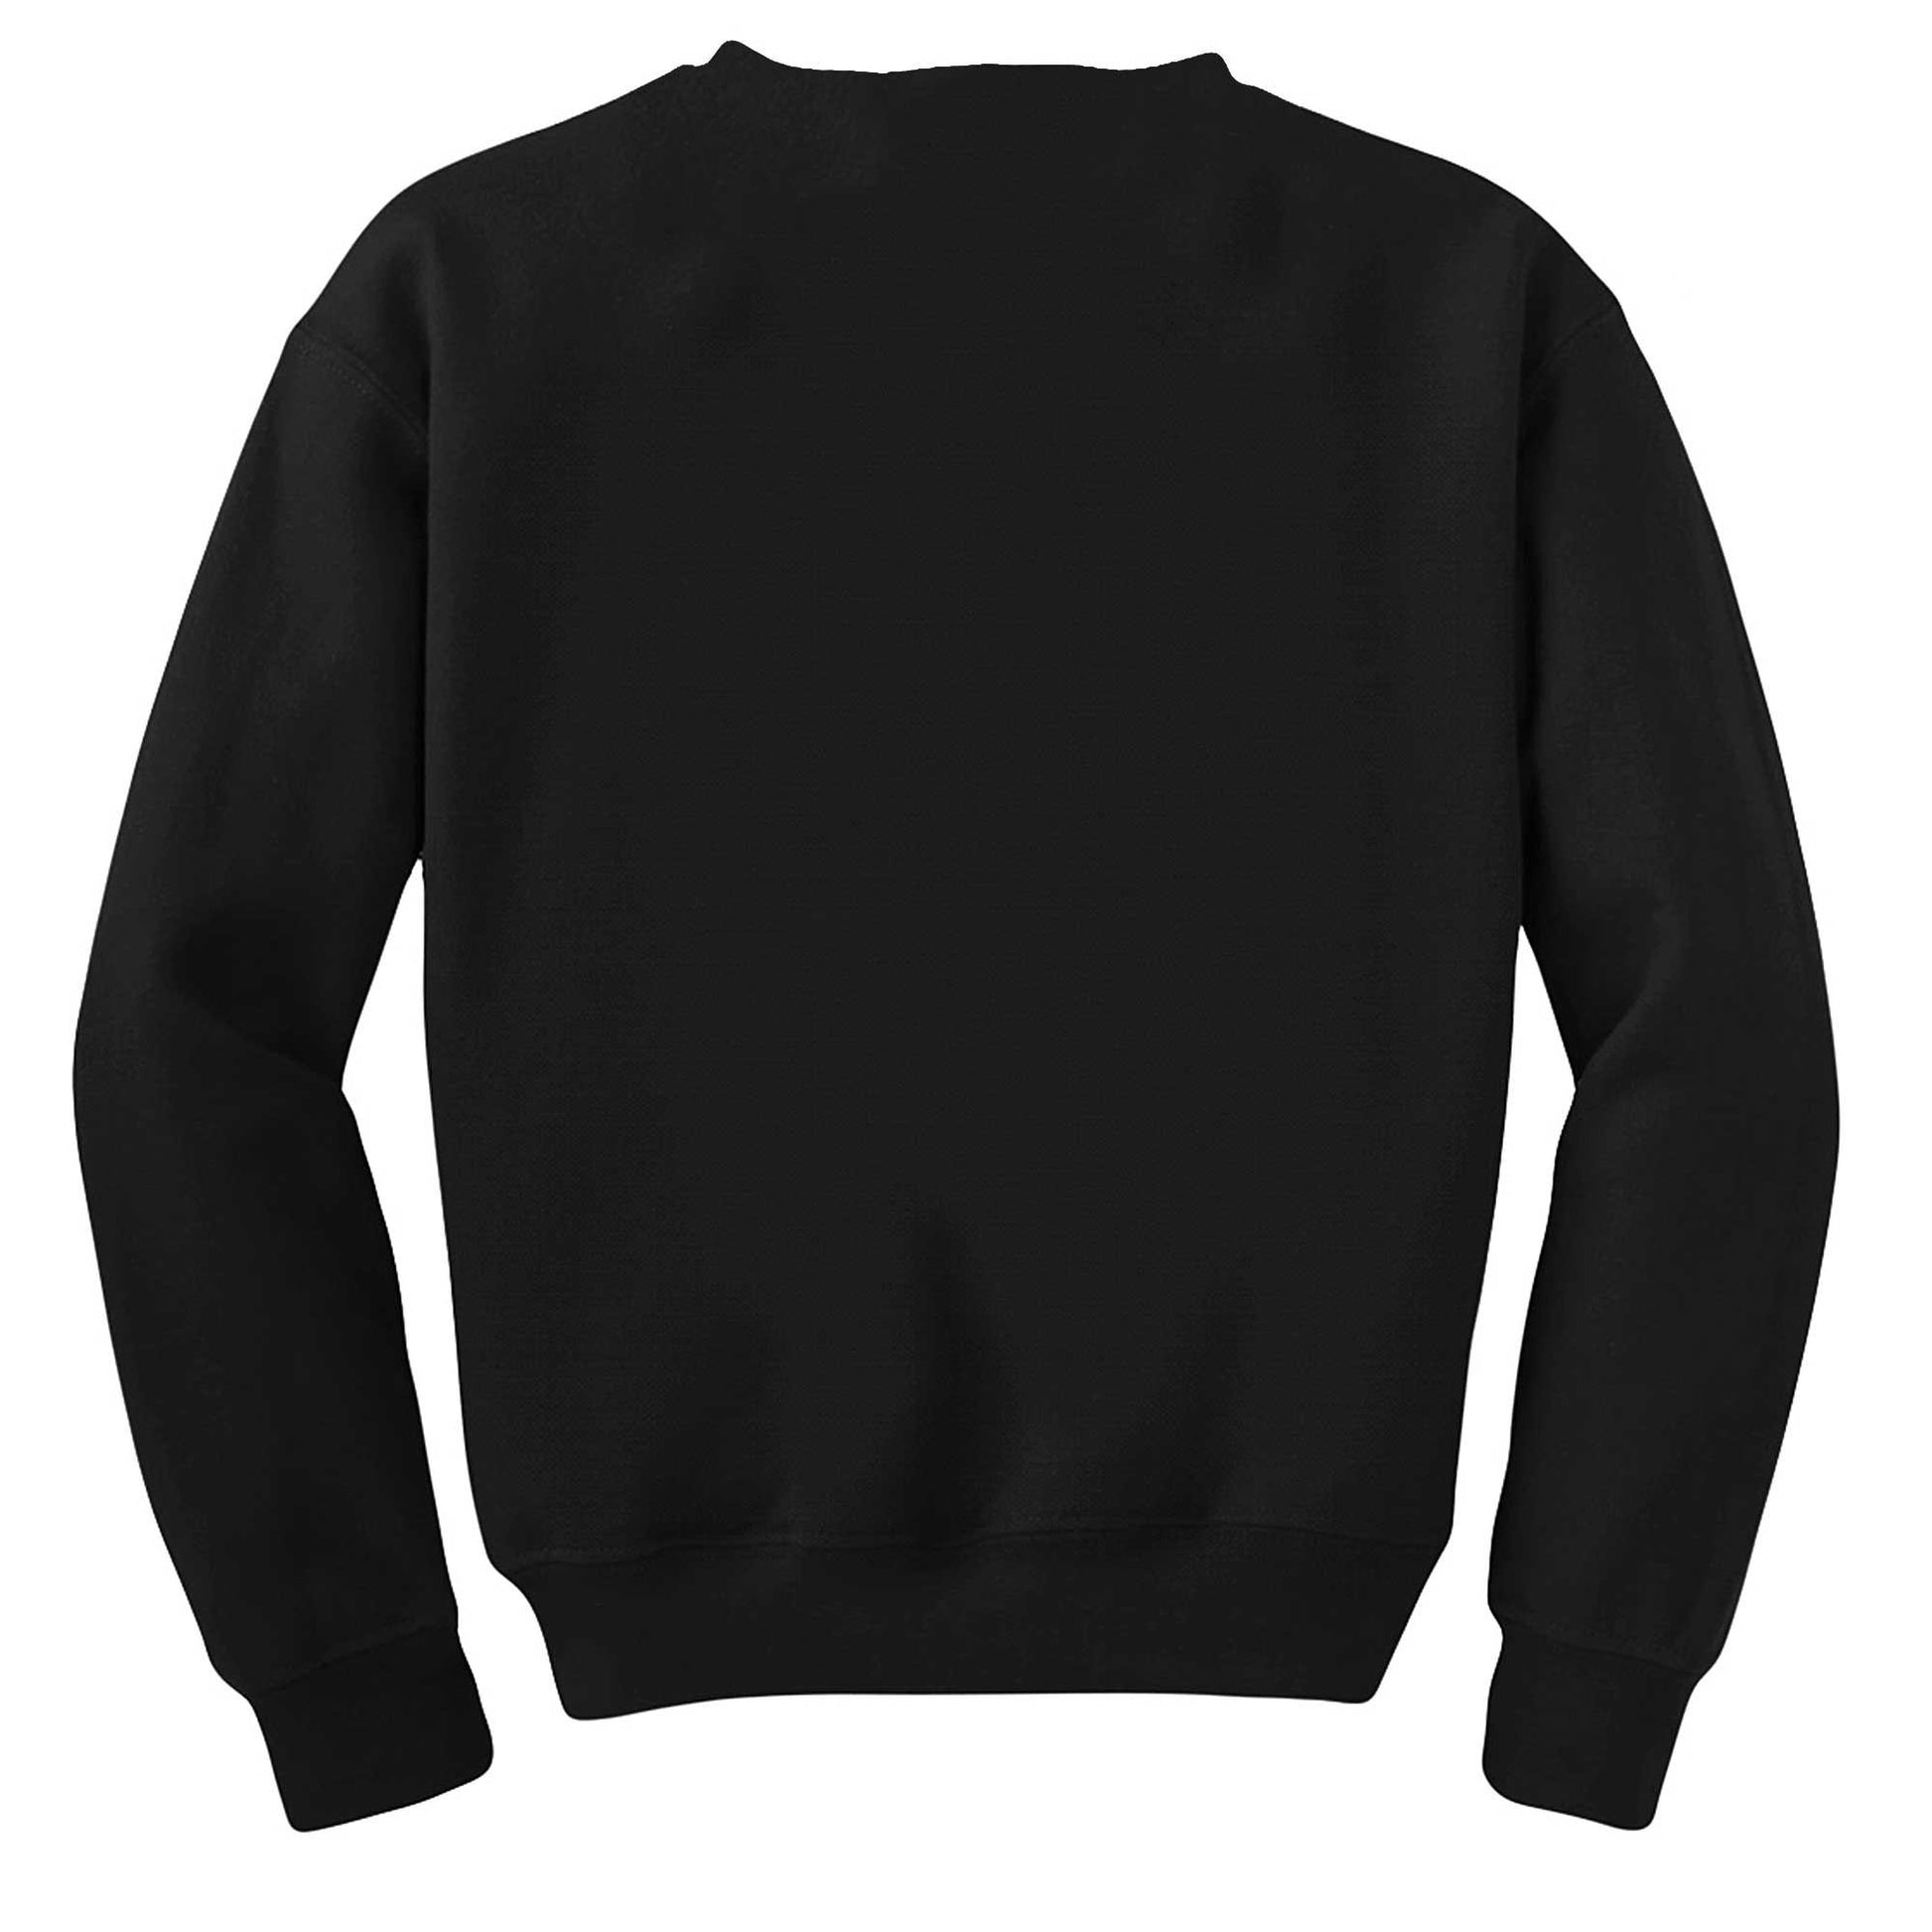 Lebron James King 23 Siyah Sweatshirt - Zepplingiyim